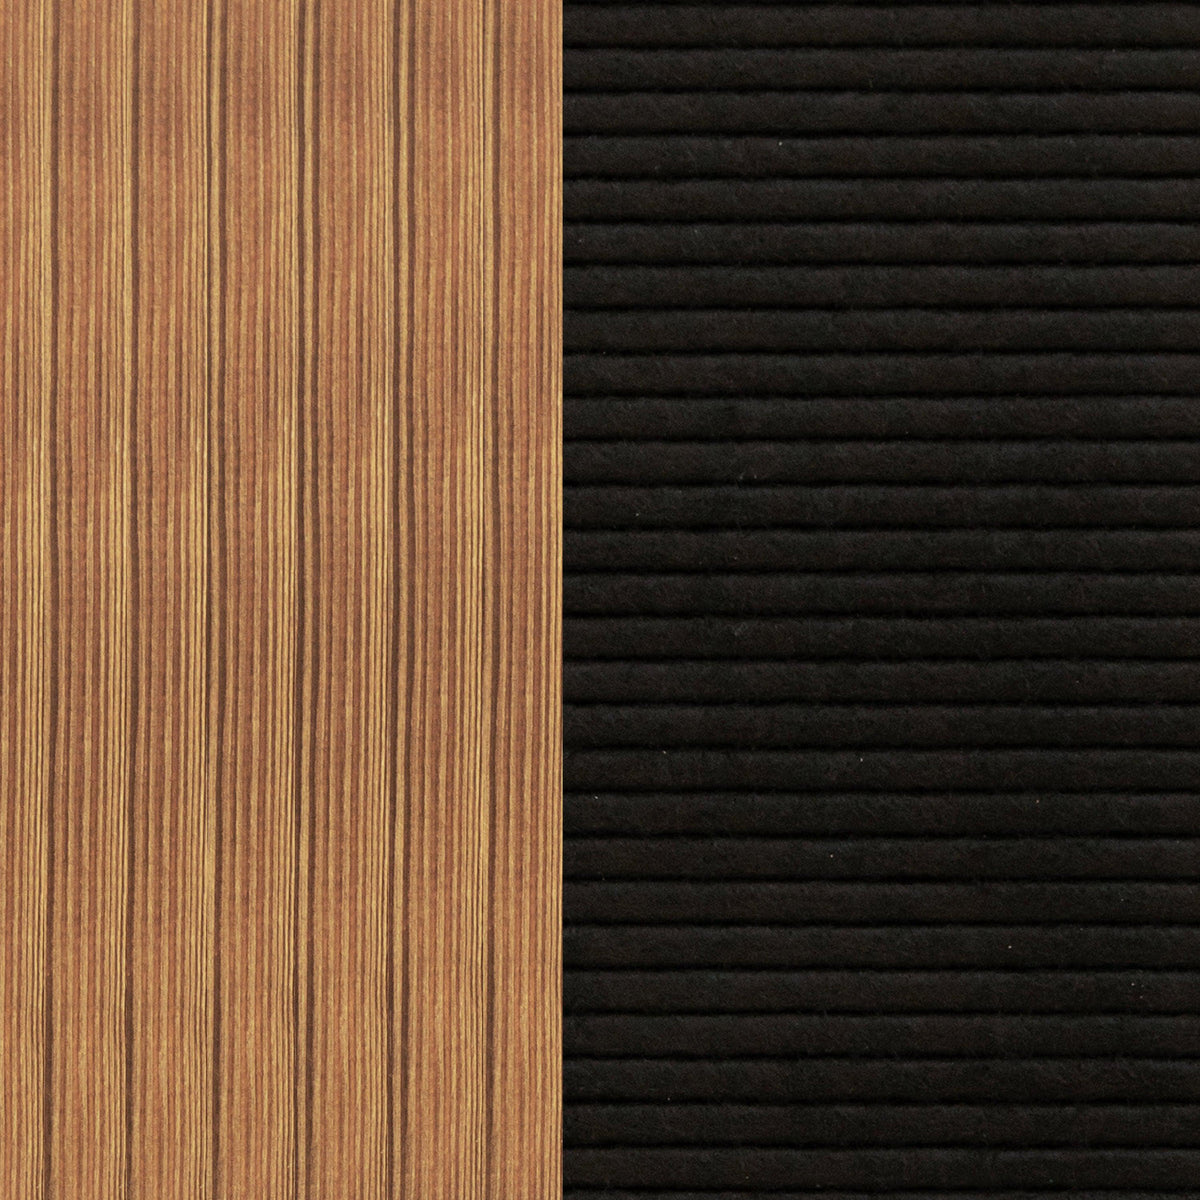 Torched Wood Frame/Black Felt,12"W x 17"H |#| 12x17 Wood Frame Letter Board with 389 PP Letters - Torched Wood/Black Felt